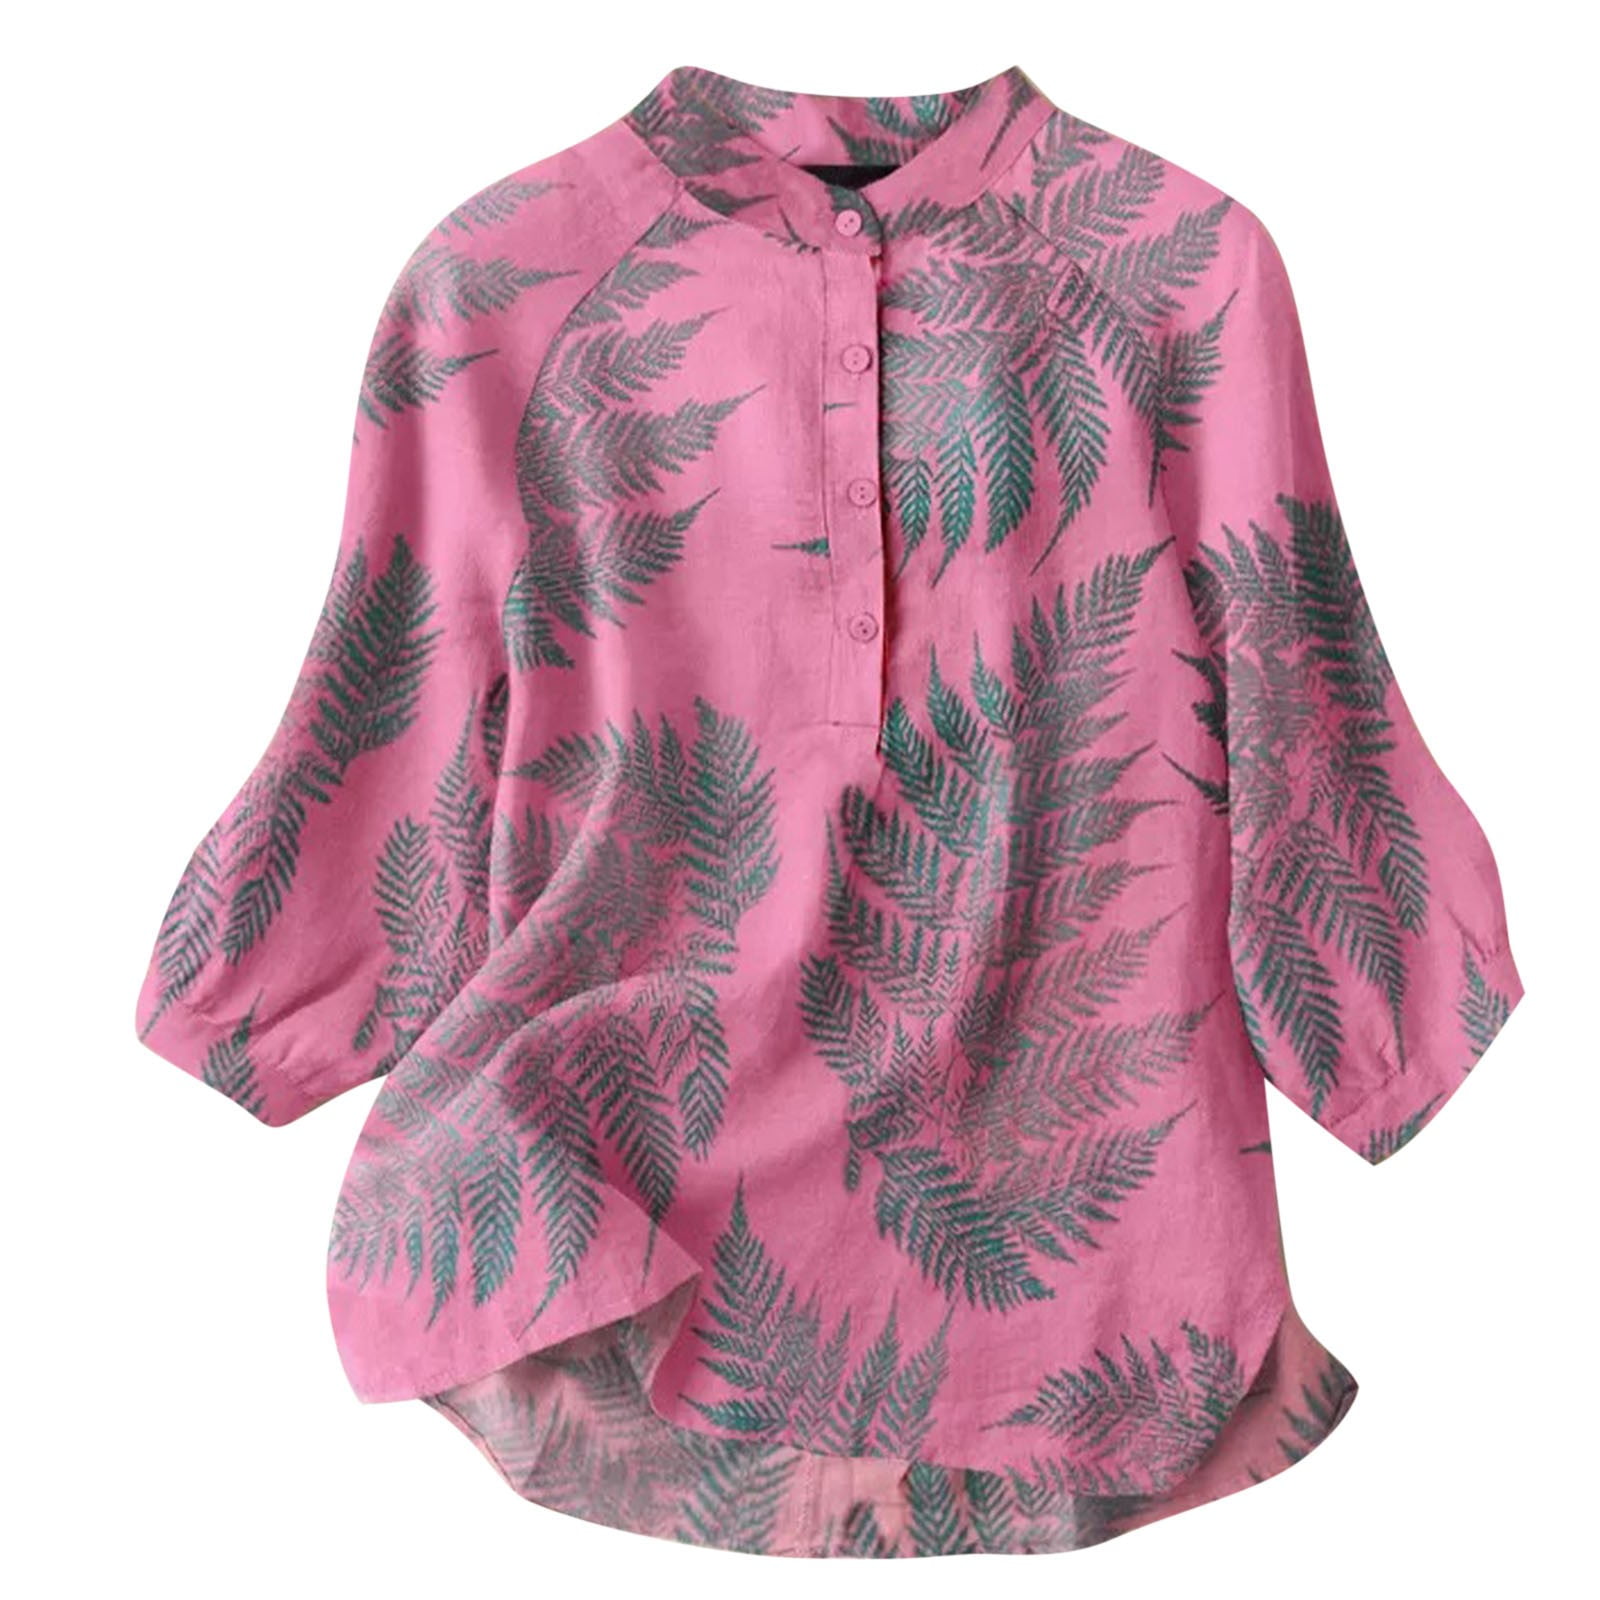 Lastesso Womens Cozy Cotton Line Blouse Tops Palm Leaf Floral